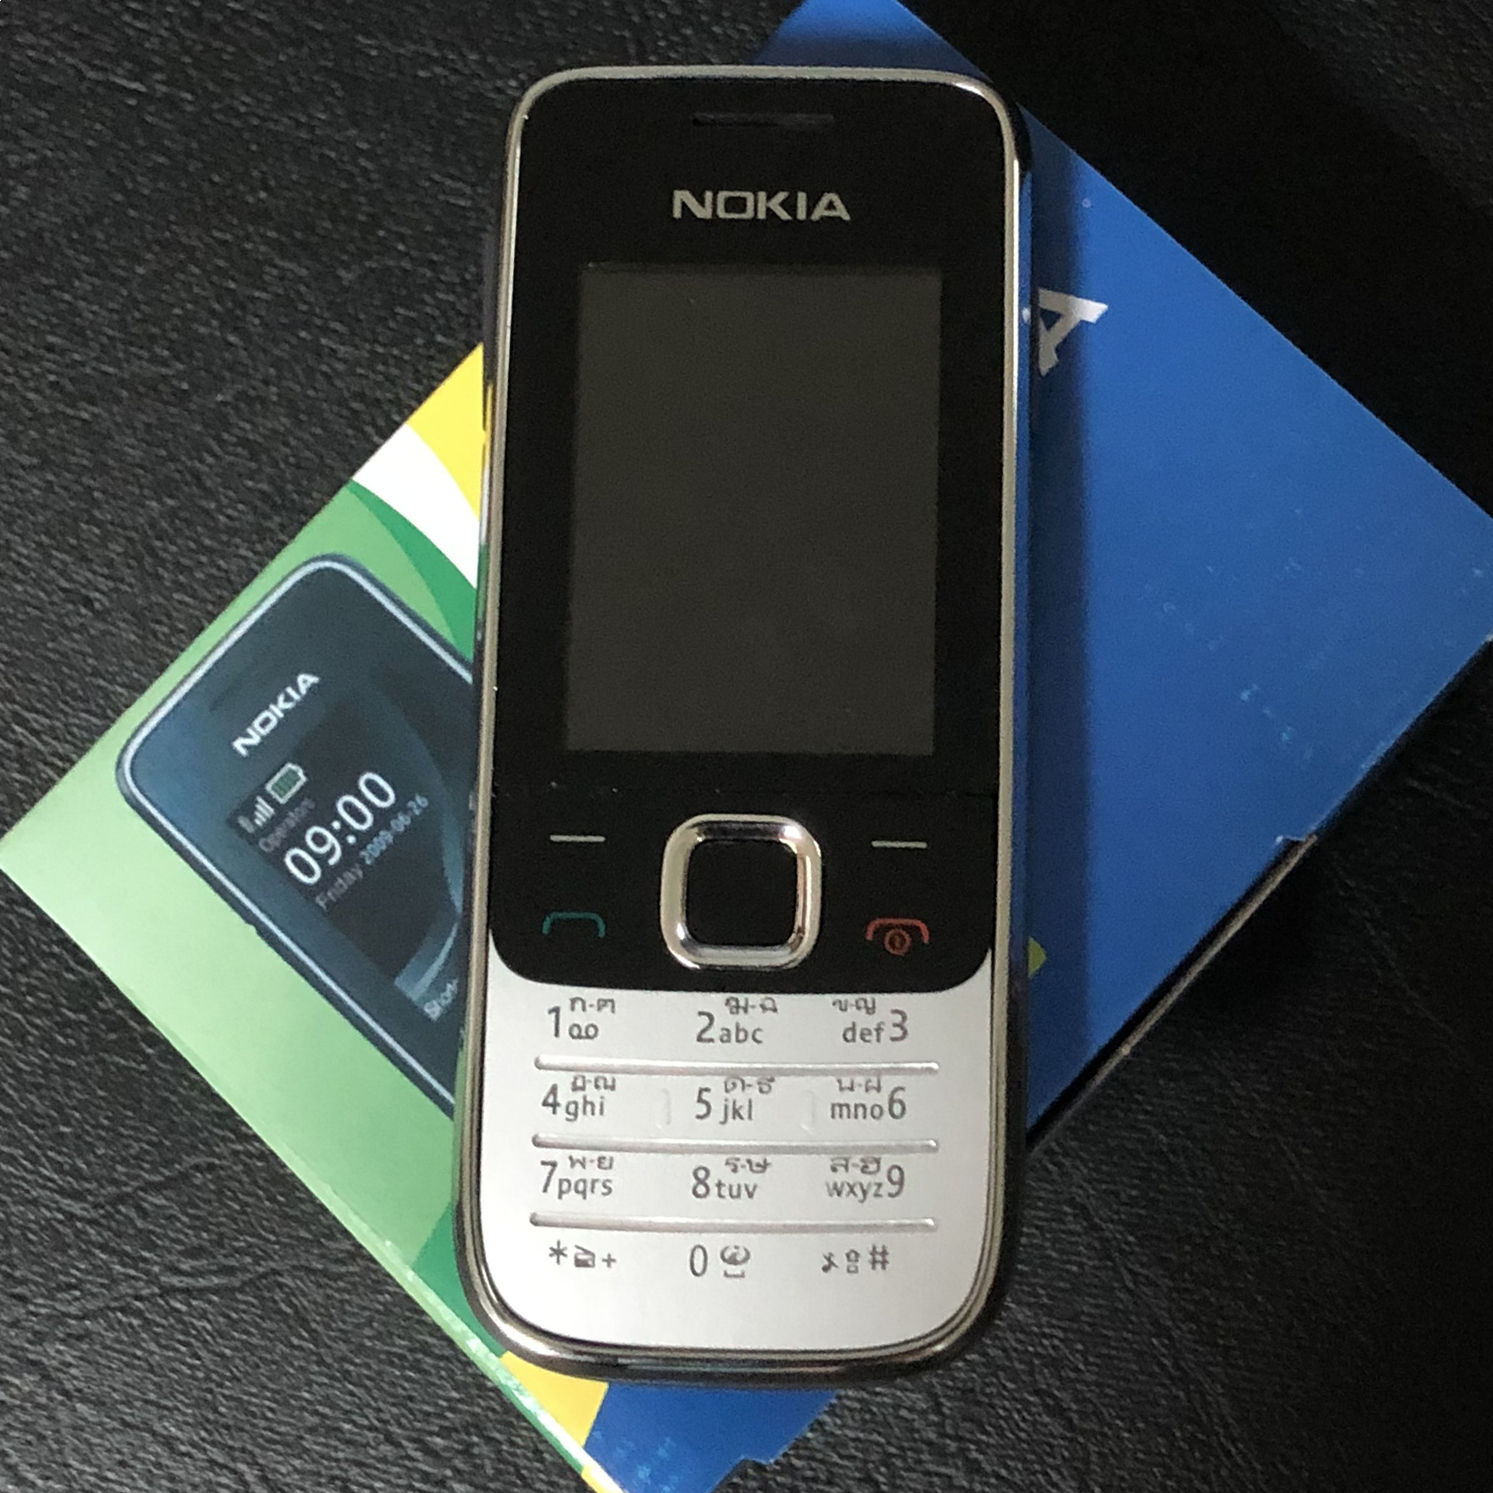 ด่าน❗️พร้อมส่ง🚚💨แท้จริง Nokia 2730 3G โนเกีย nokia โนเกีย จอใหญ่ ปุ่มกดมีเก็บปรายทาง สามารถใช้ได้ทุกซิมการ์ด